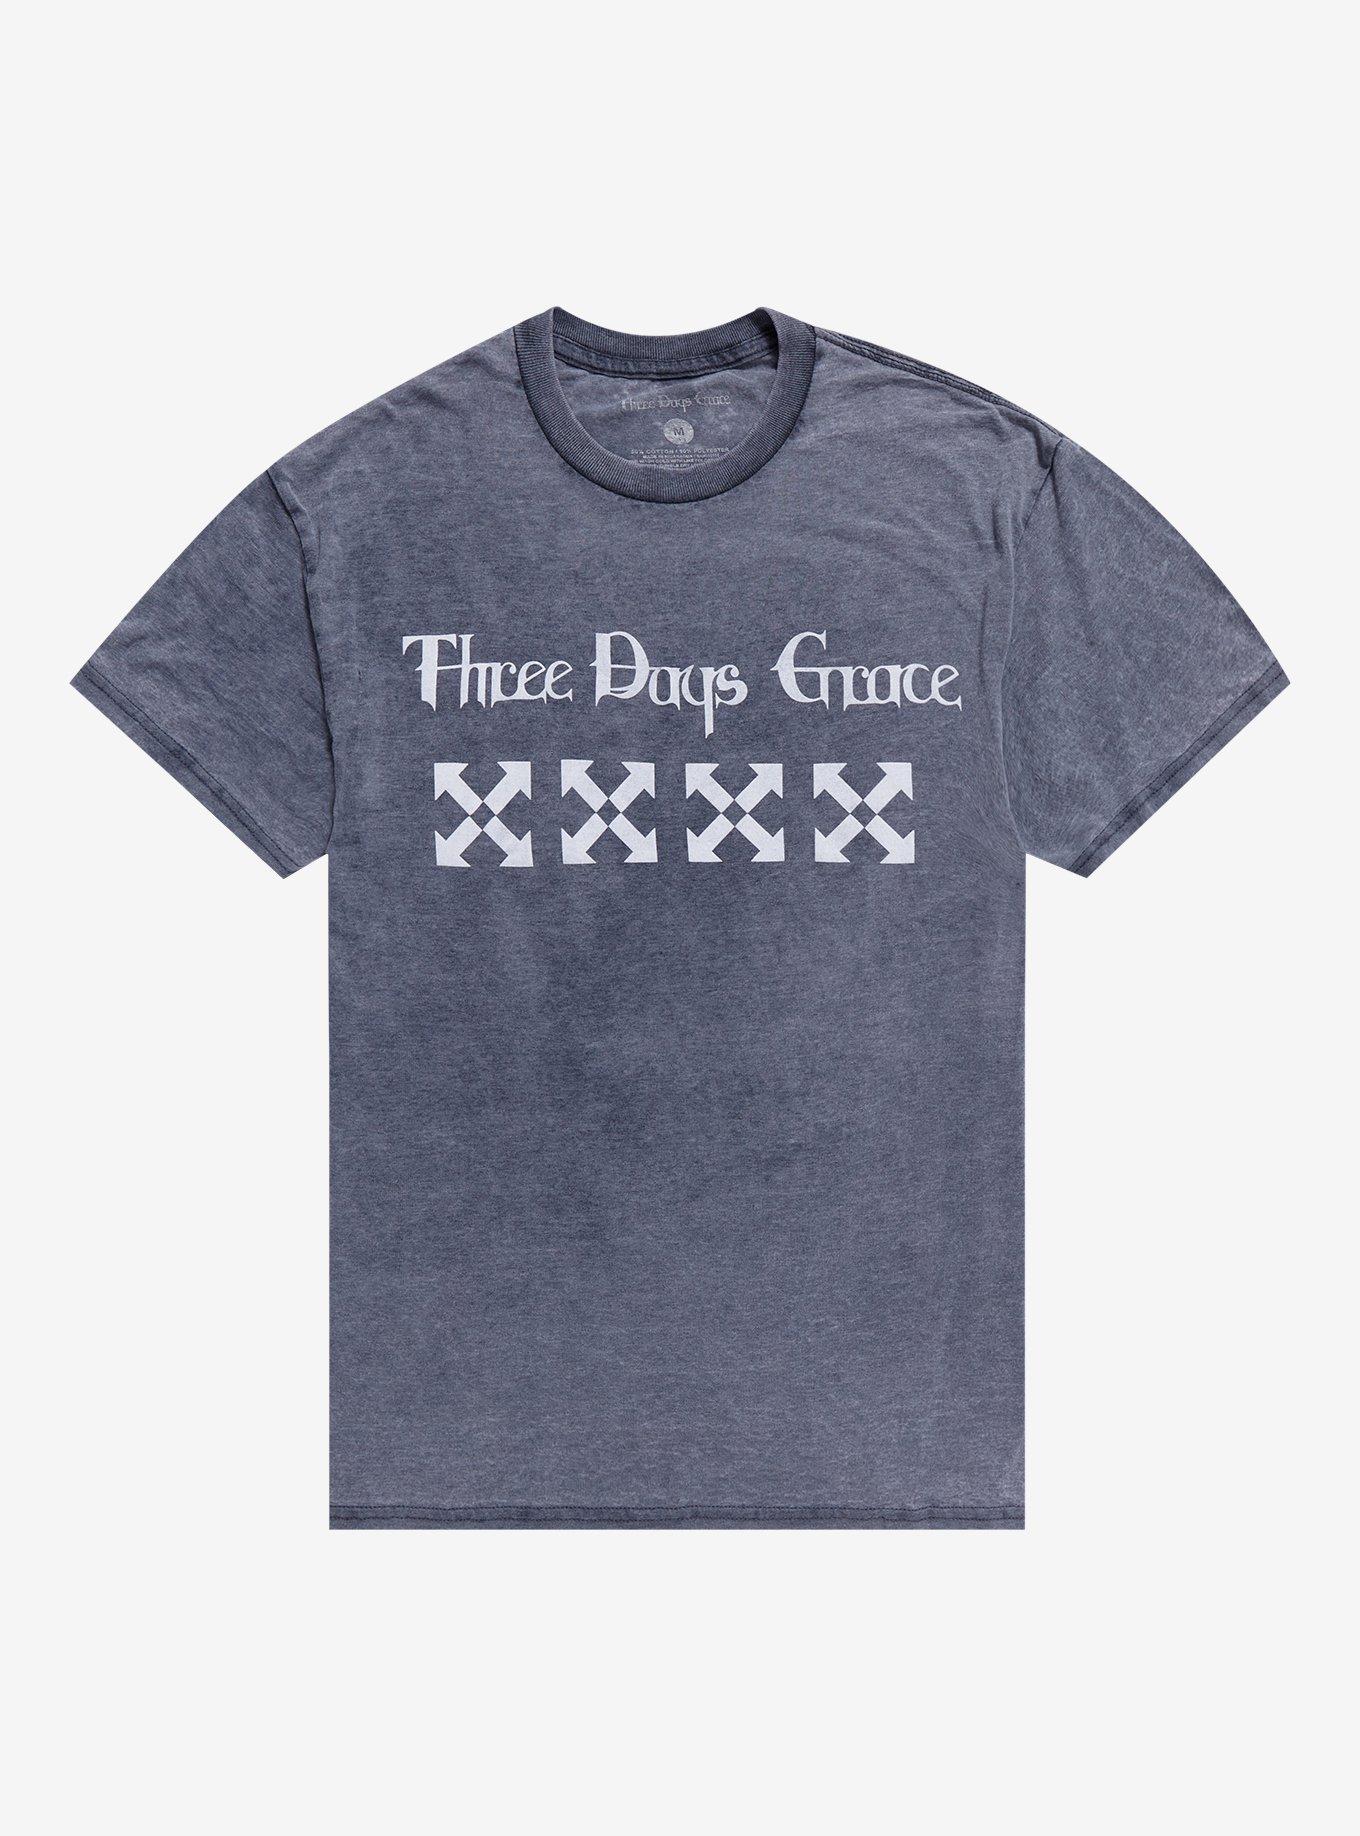 Three Days Grace Arrows Boyfriend Fit Girls T-Shirt, GREY, hi-res